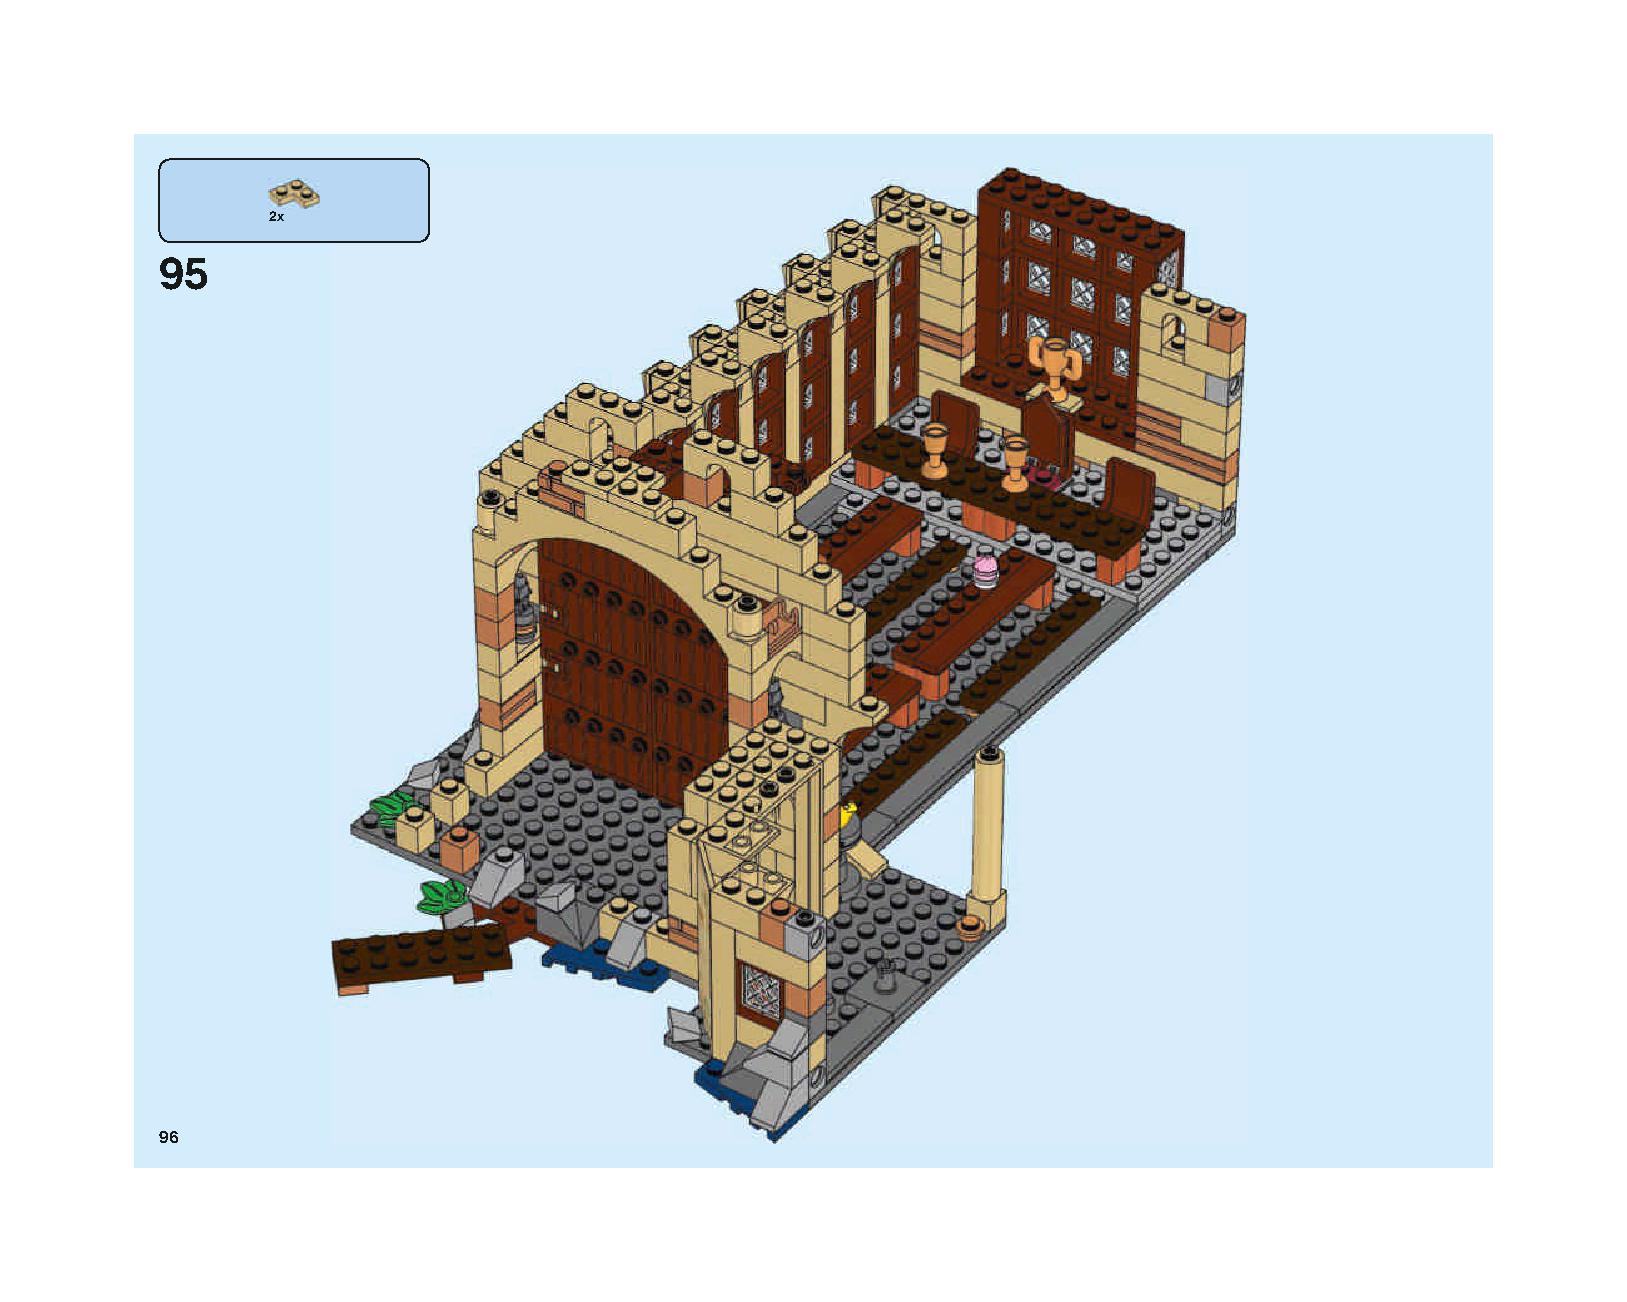 ホグワーツの大広間 75954 レゴの商品情報 レゴの説明書・組立方法 96 page